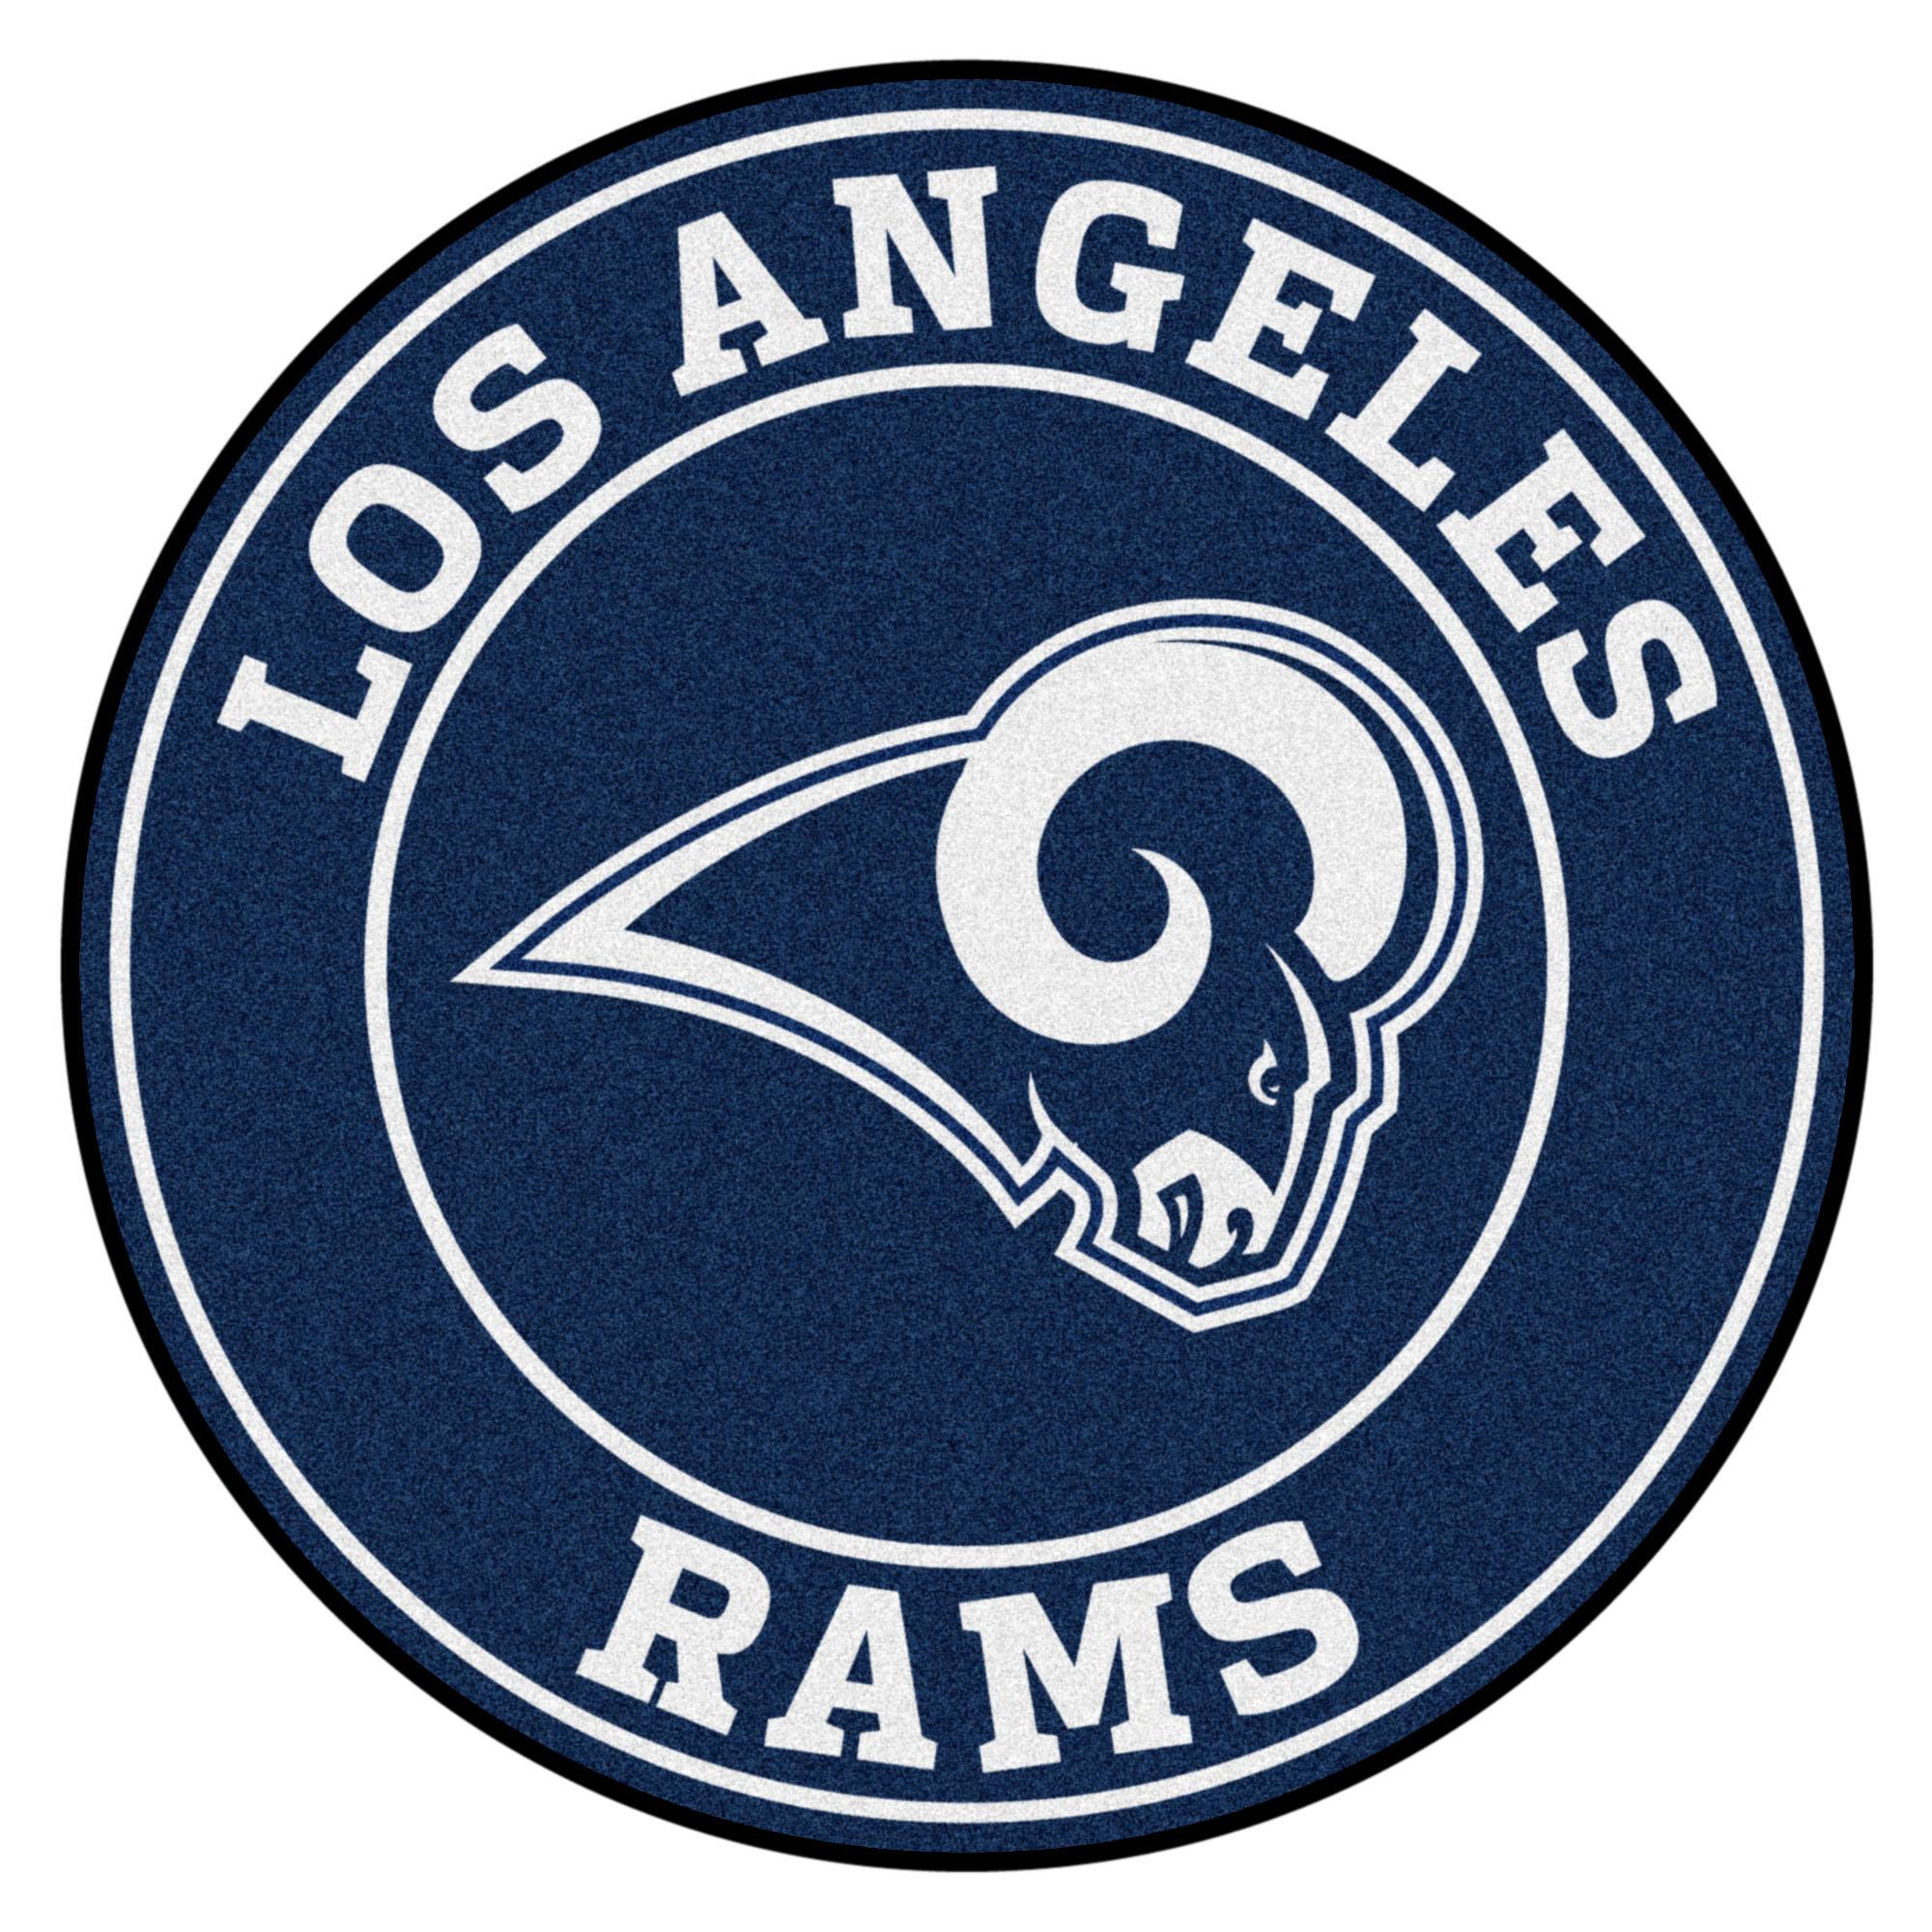 Los Angeles Rams Logo - Los angeles rams Logos